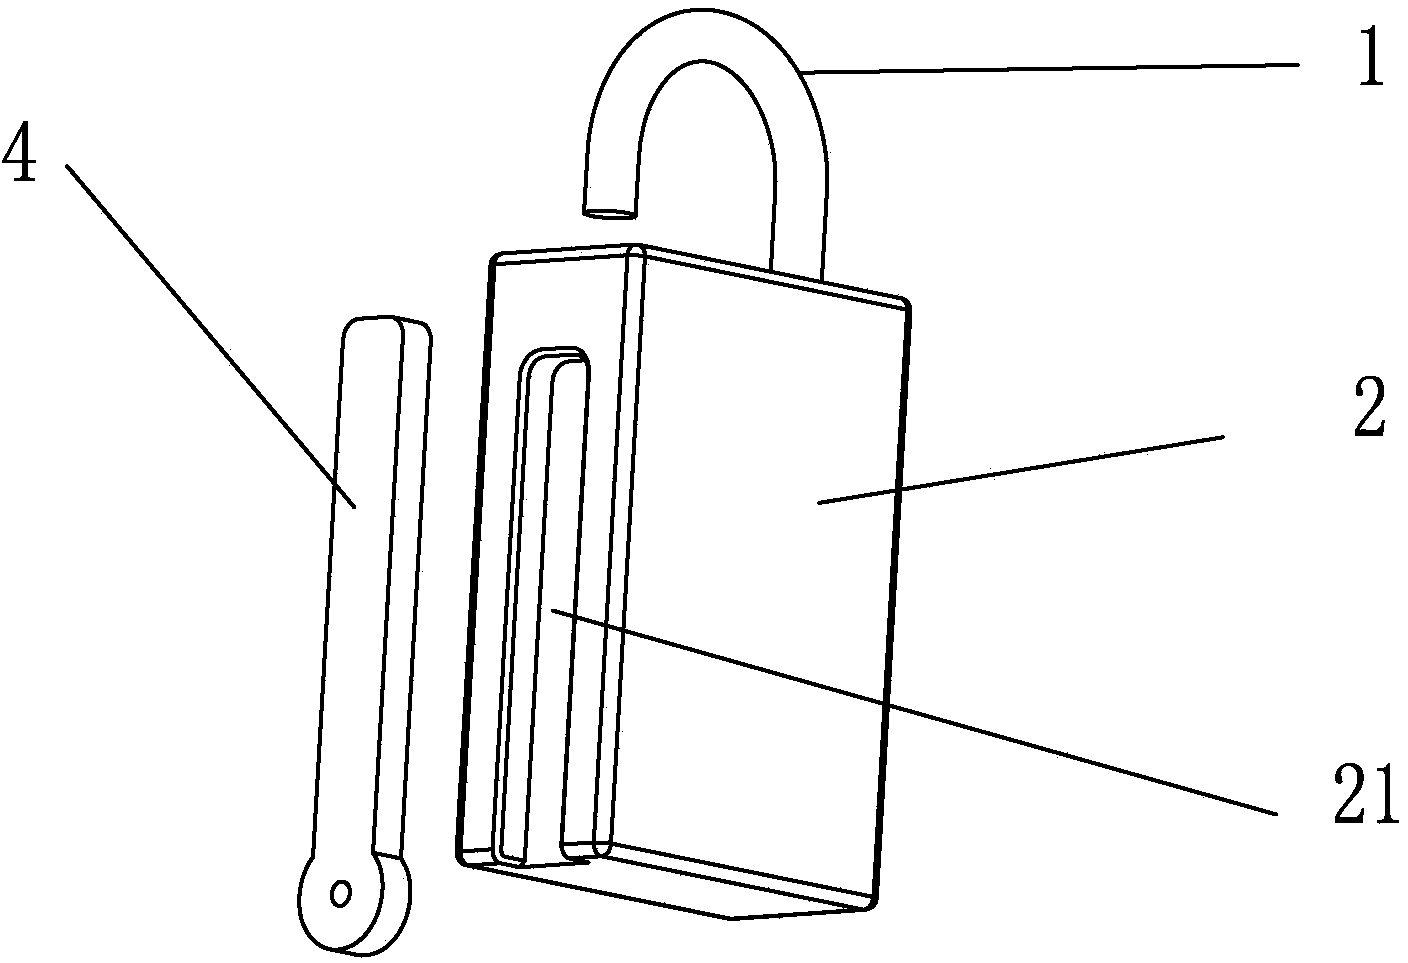 Magnetic strip padlock